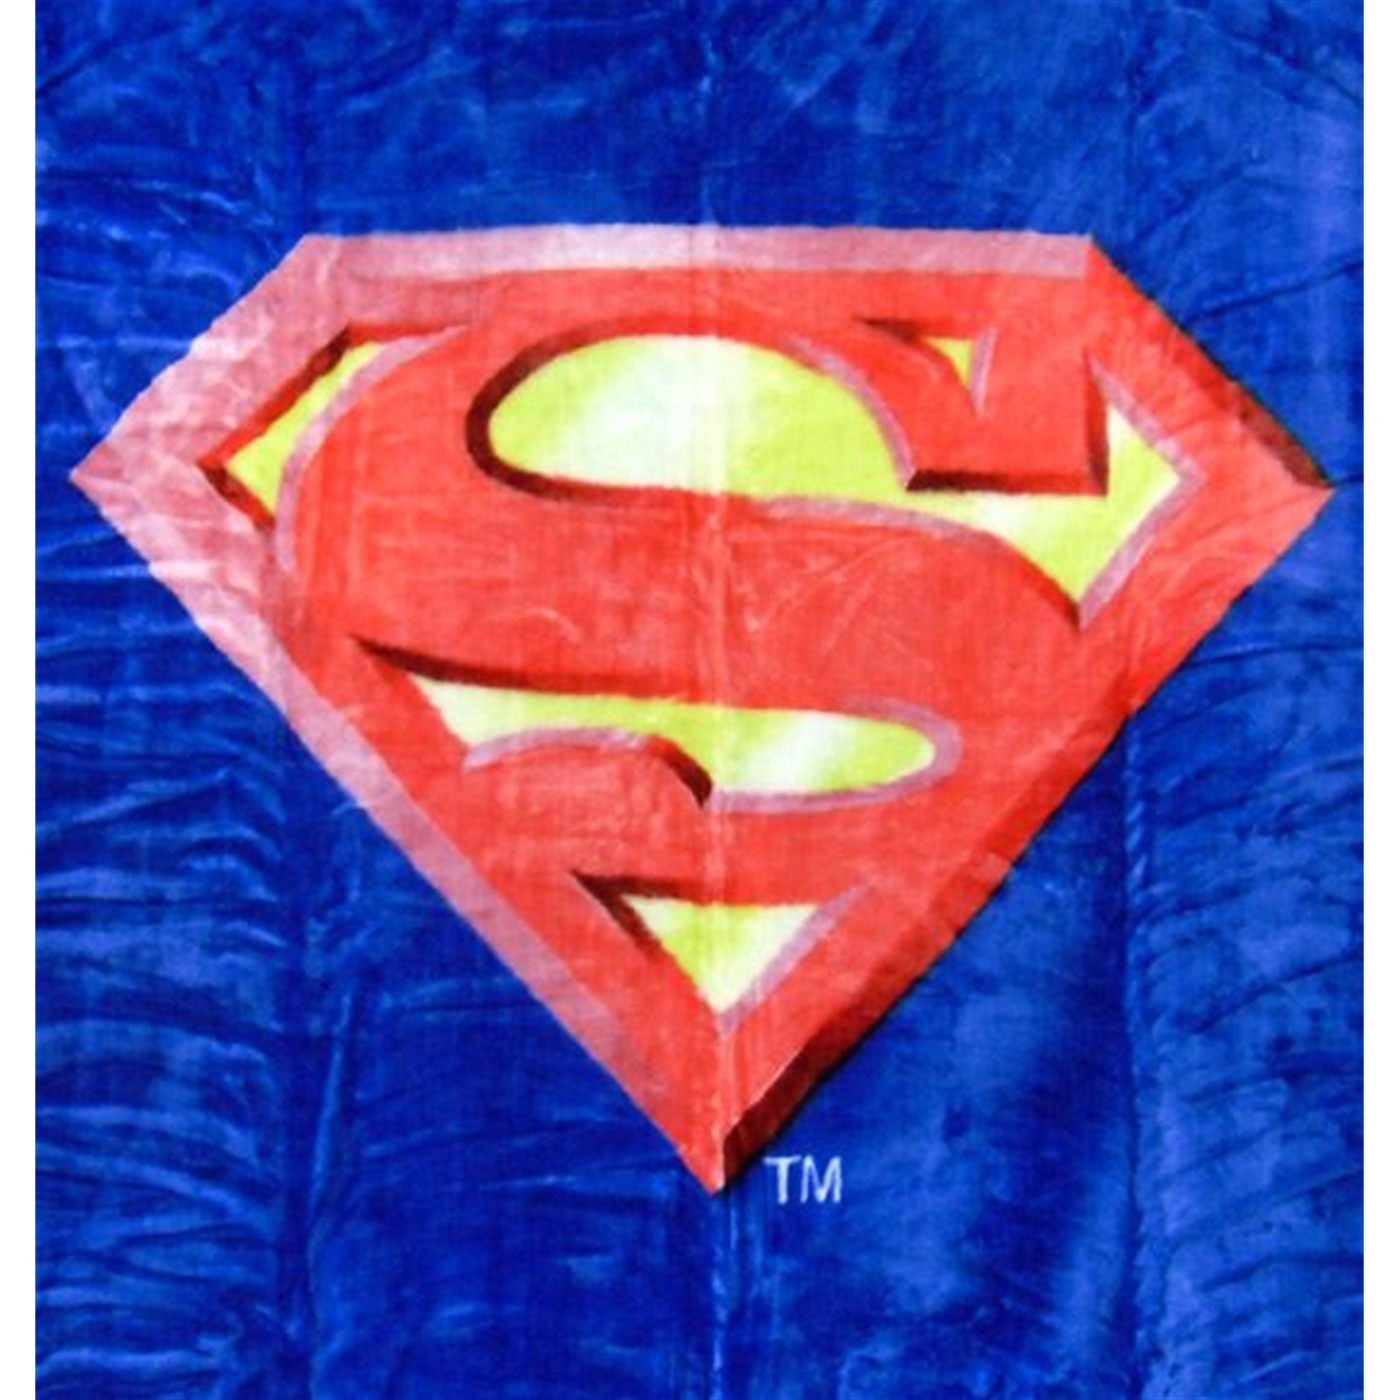 Superman Symbol Queen Blanket